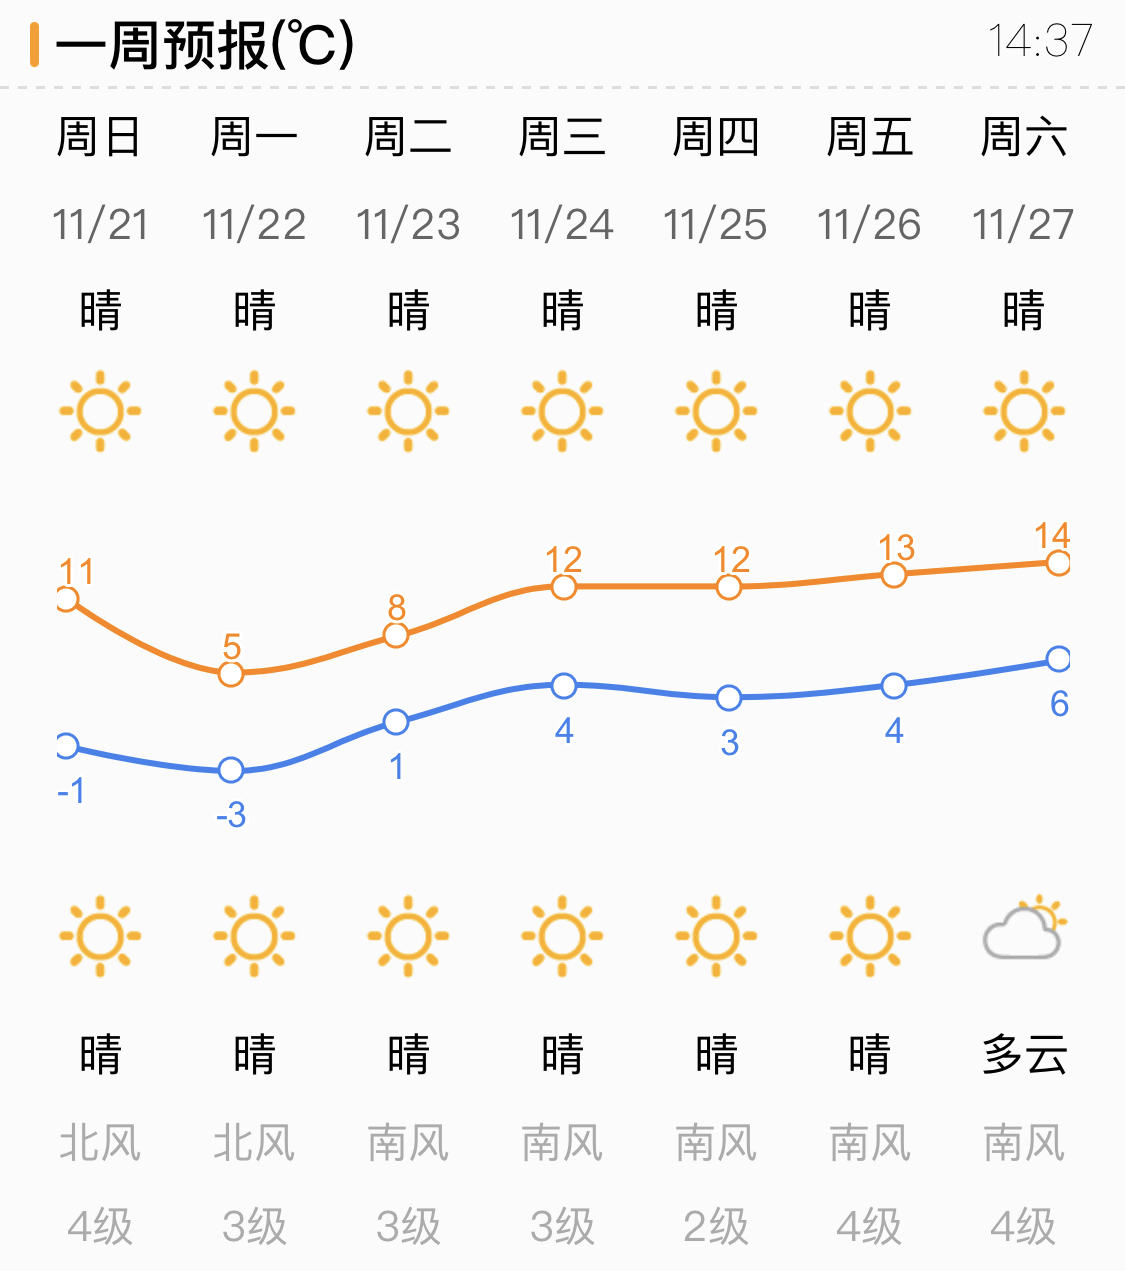 气温持续下降中！济南未来三天天气晴冷 最低气温仅-7～-3℃